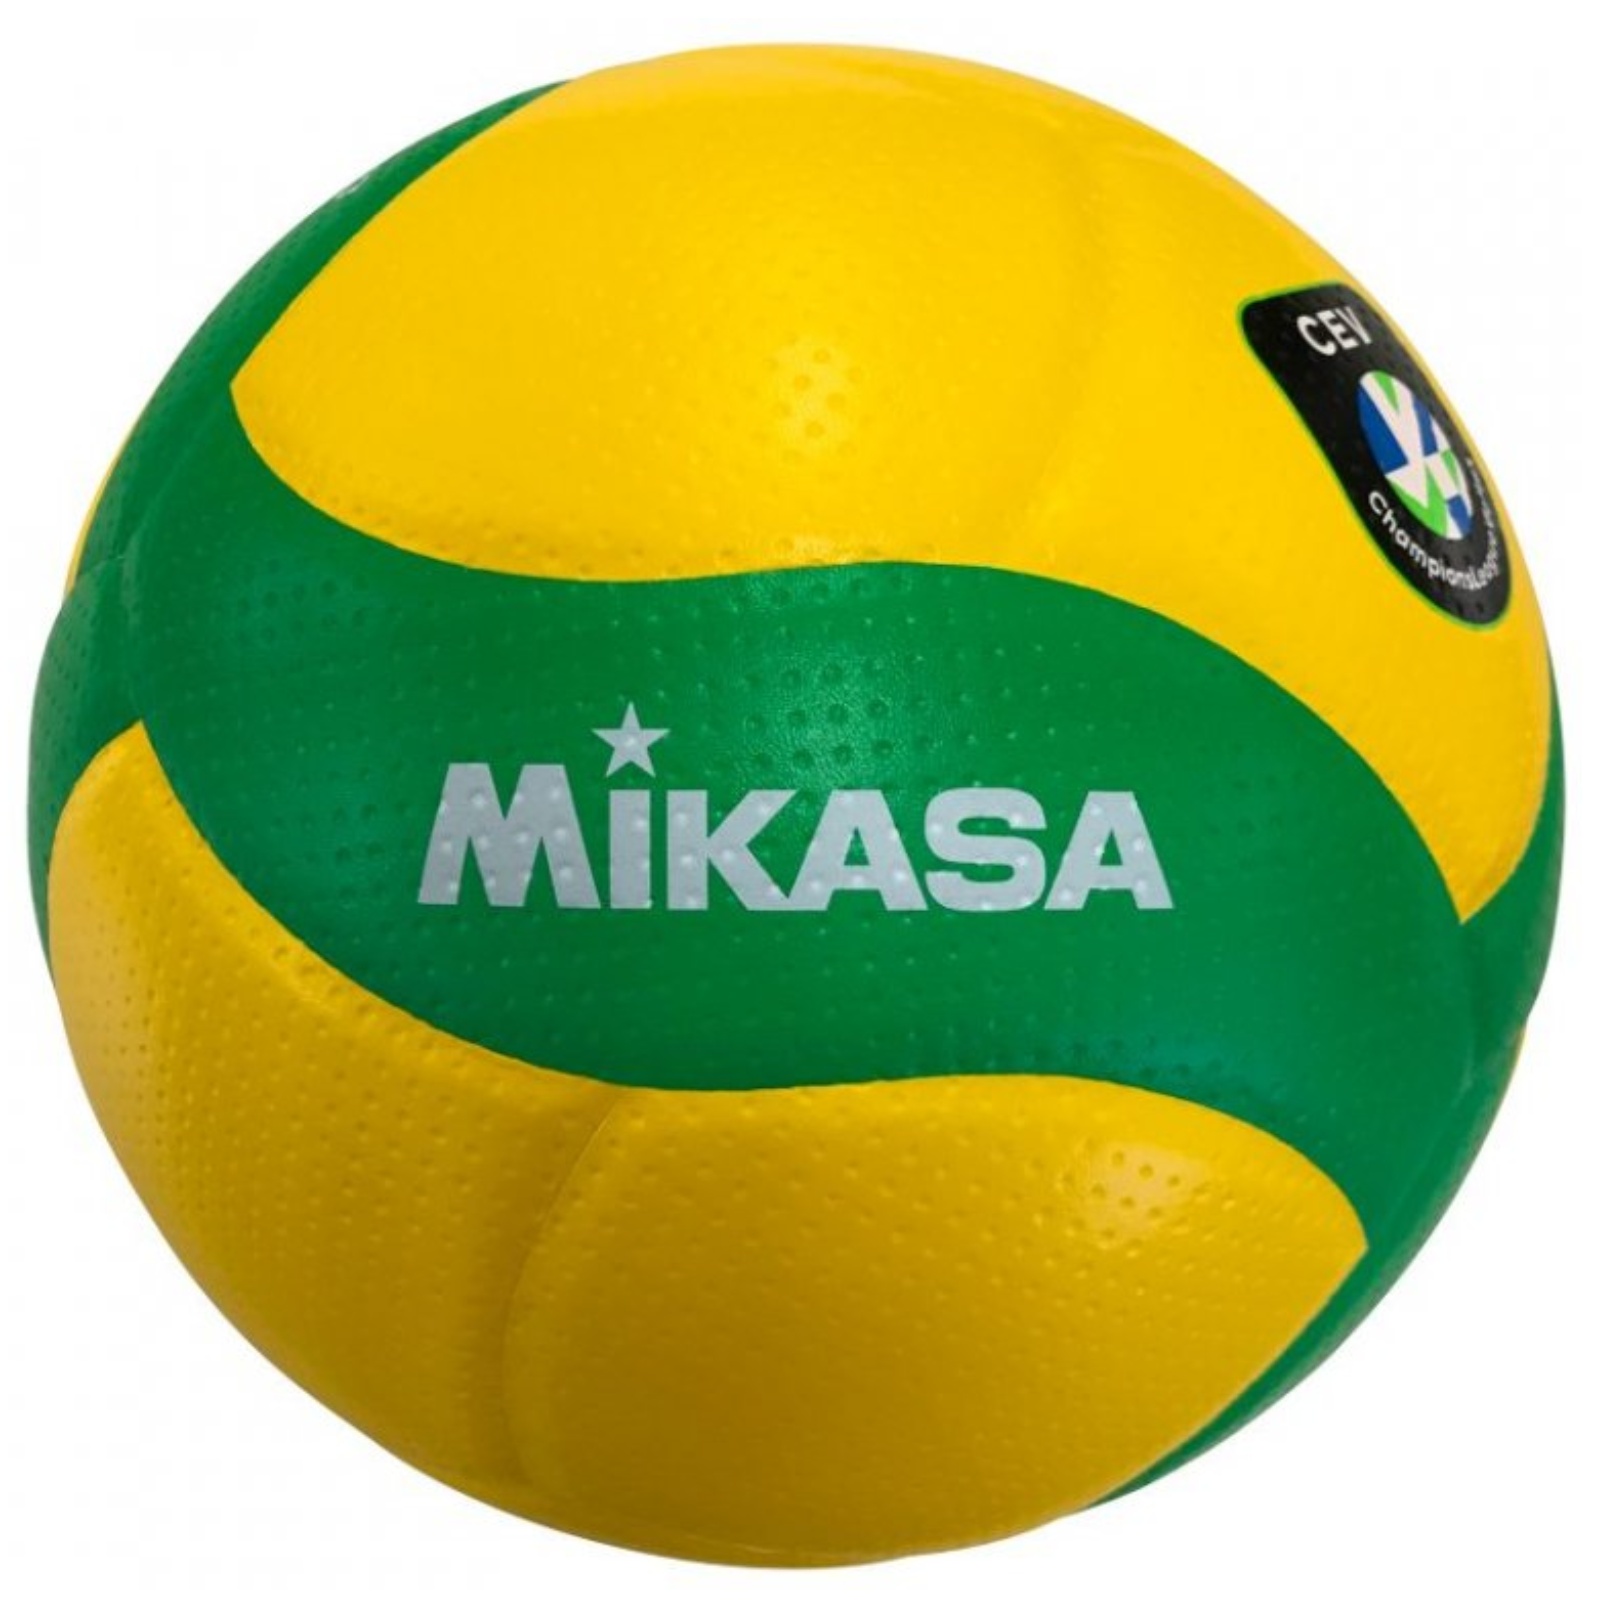 Volejbalová lopta MIKASA V200W CEV - 5